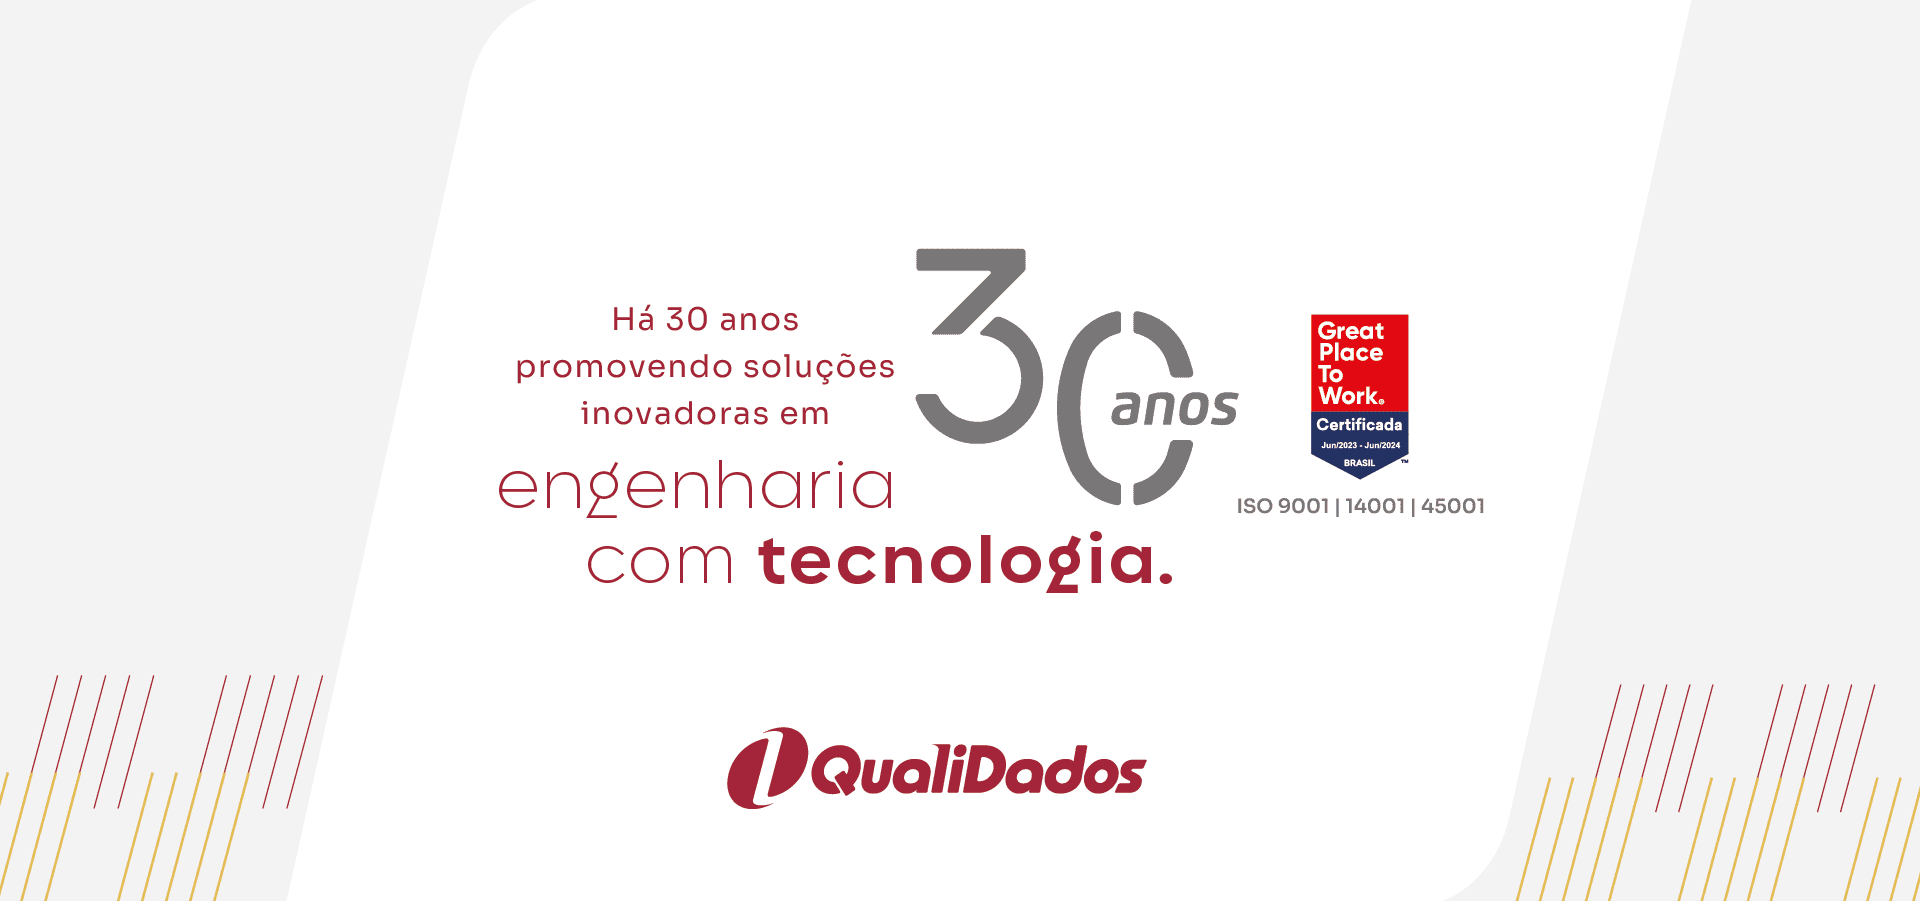 Ha 30 anos promovendo soluções inovadoras em engenharia com tecnologia.